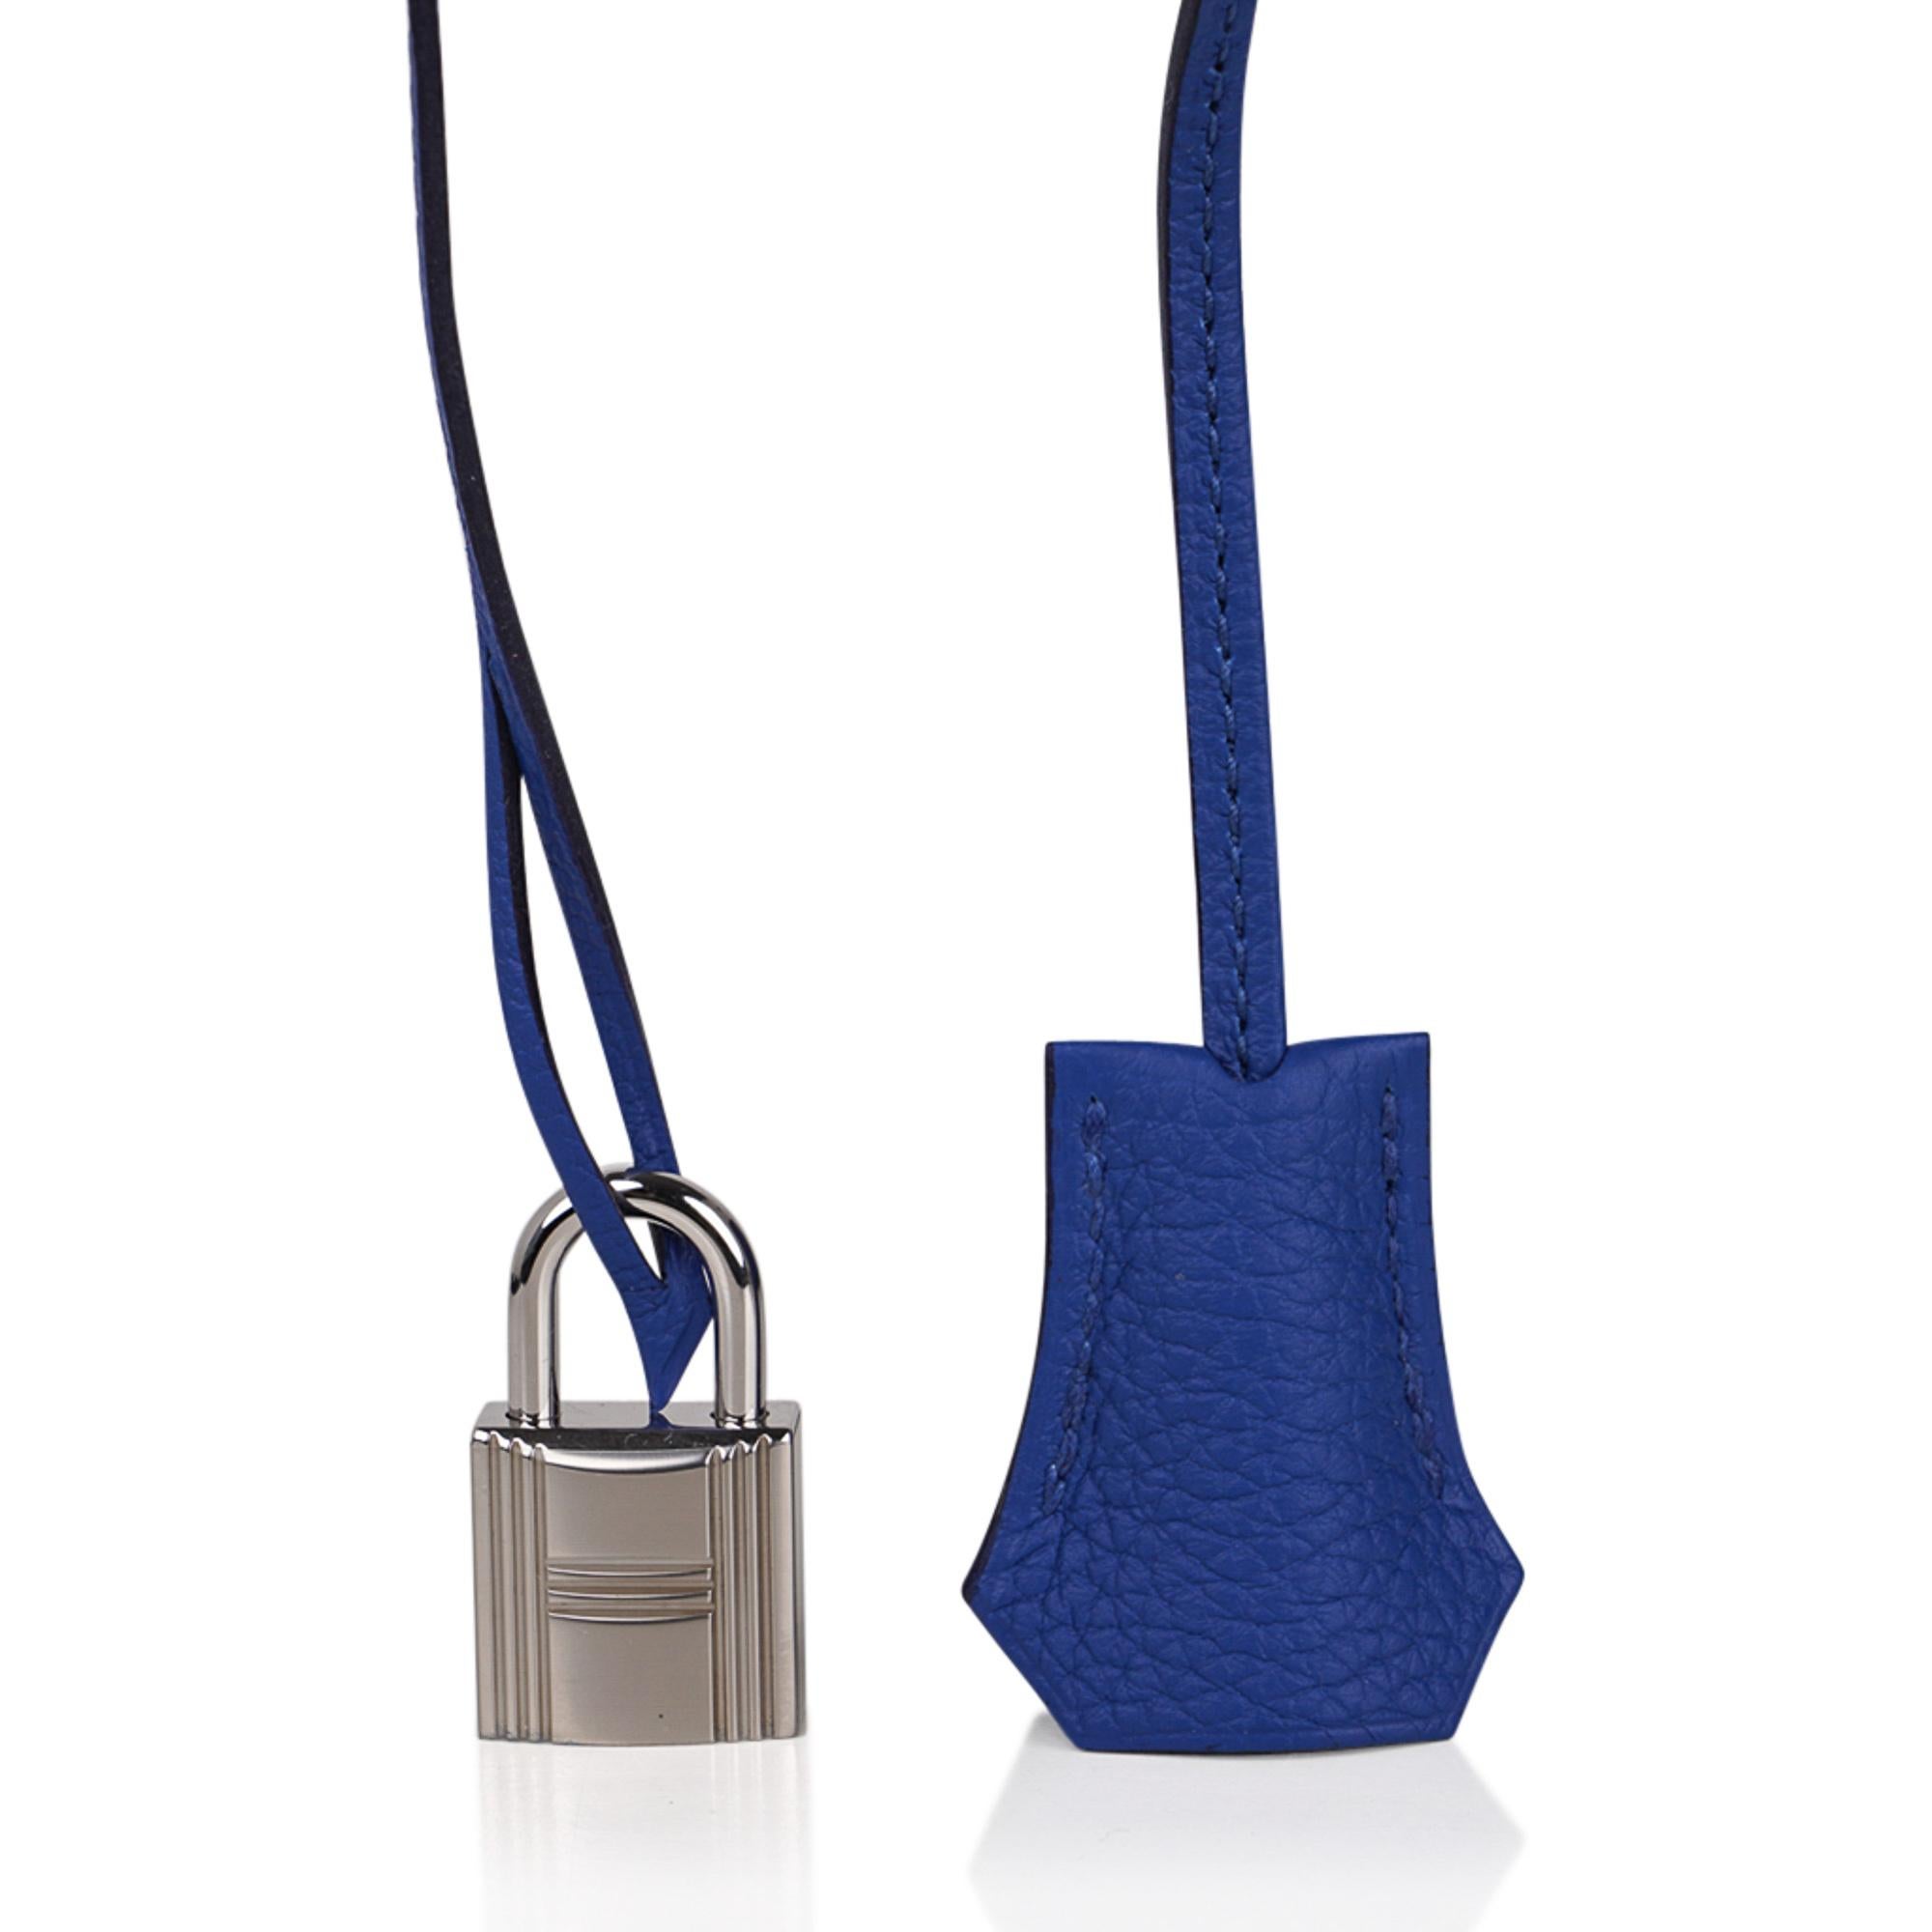 Hermes Birkin 35 Blue de France Bag Palladium Hardware Togo Leather For Sale 1